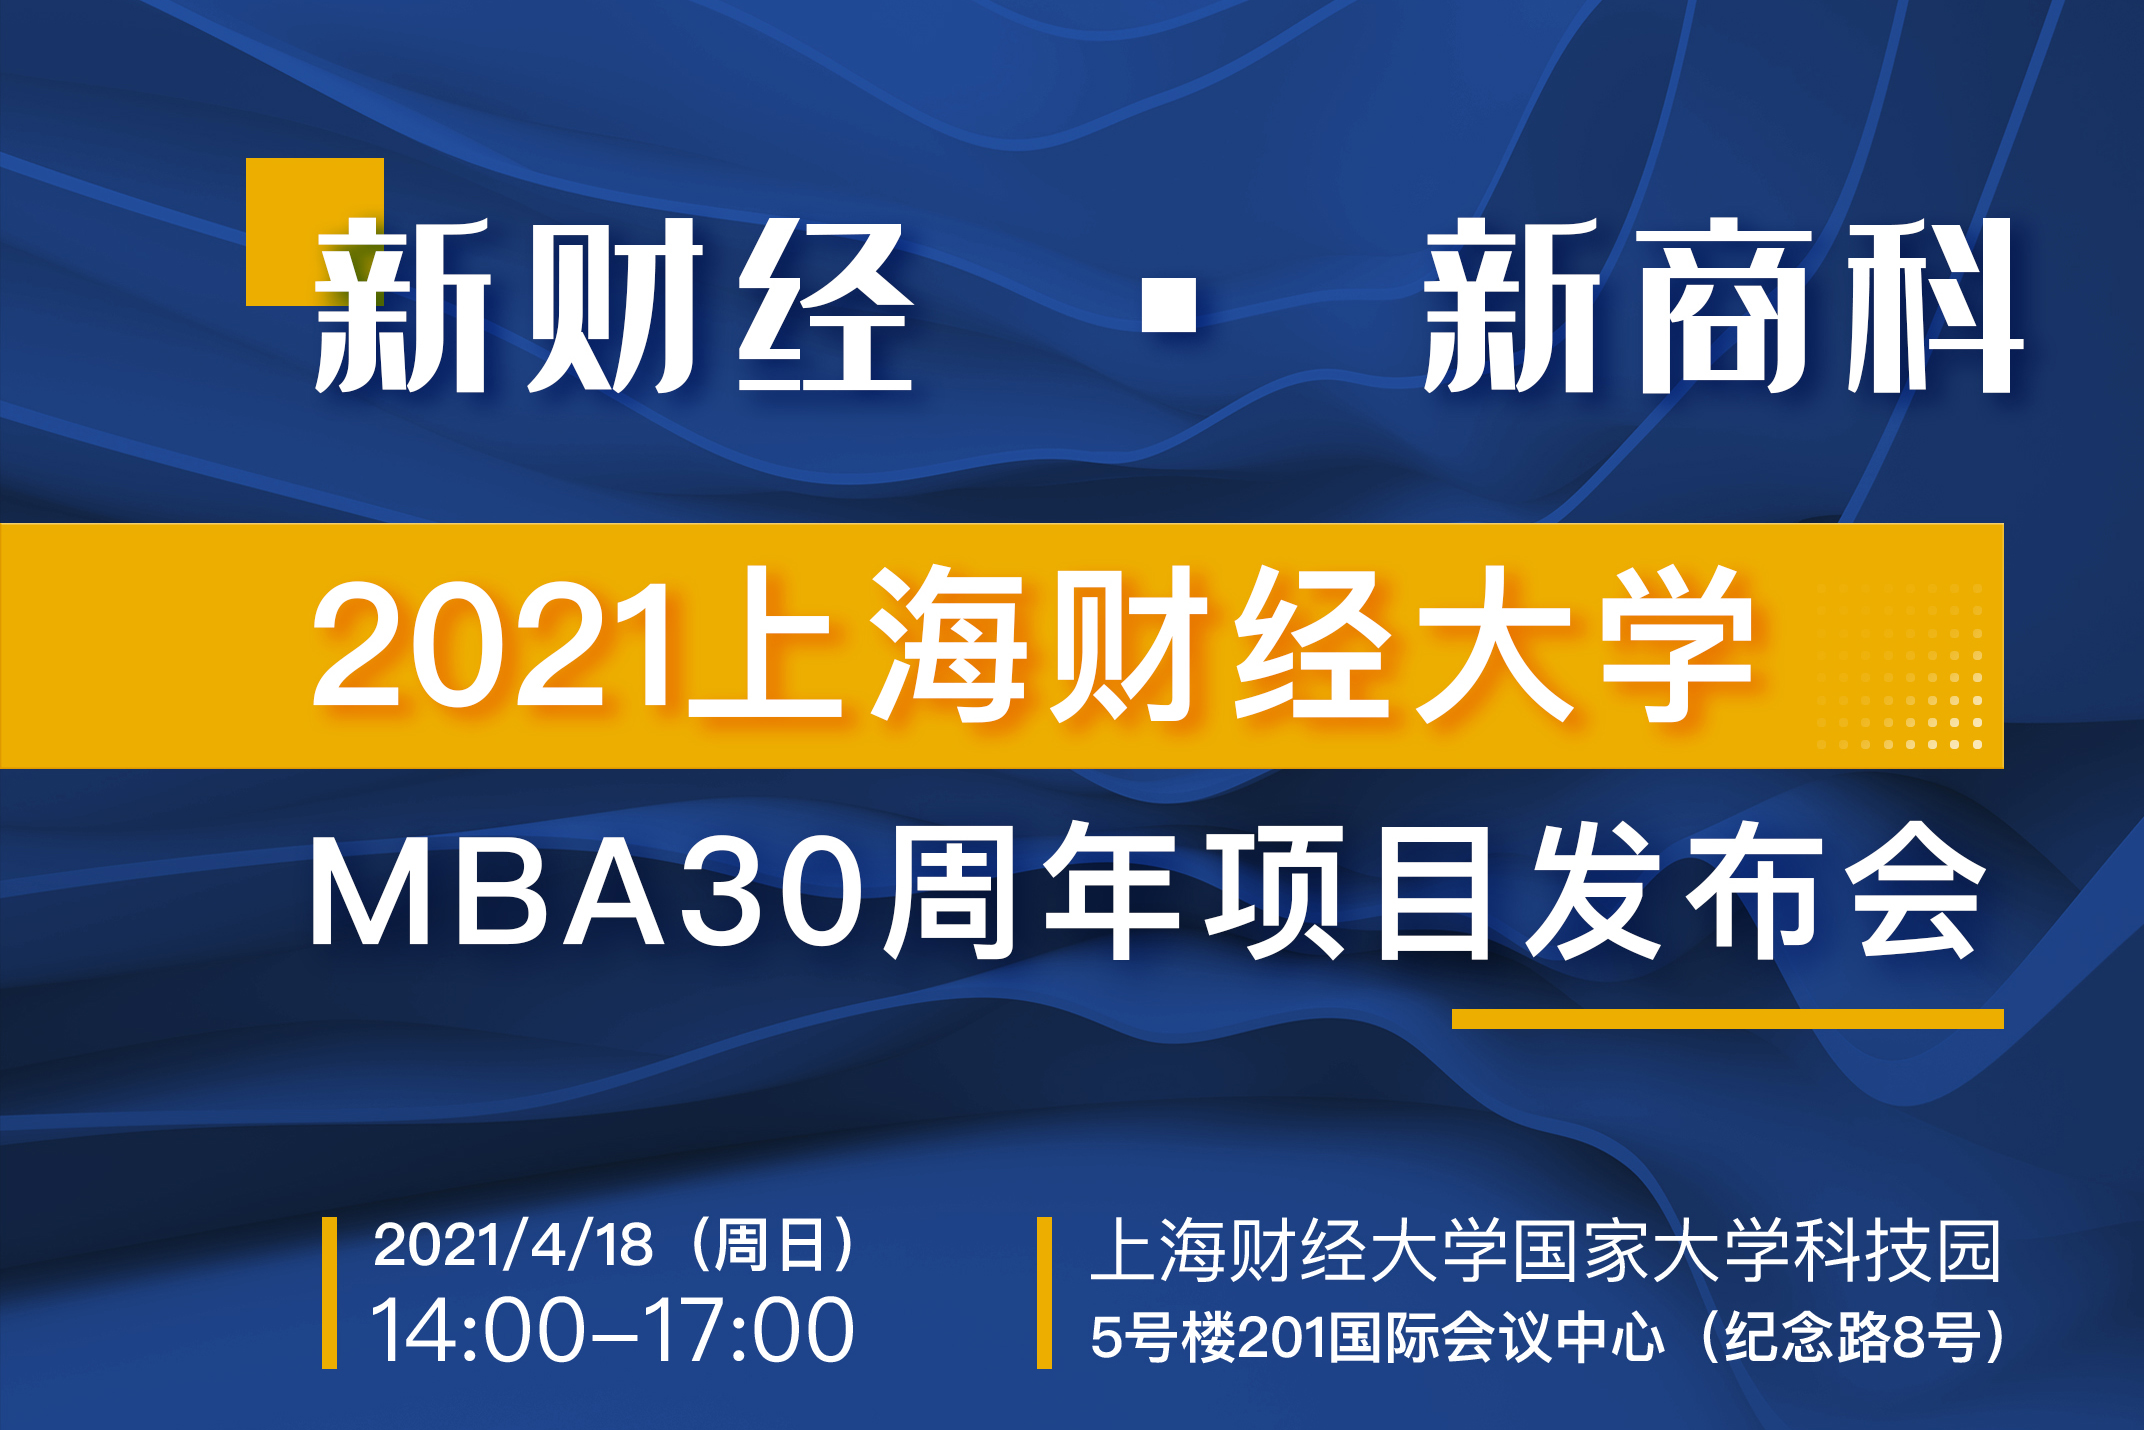 年度重磅邀请丨“新财经·新商科·新精英”上海财经大学MBA30周年项目发布会 